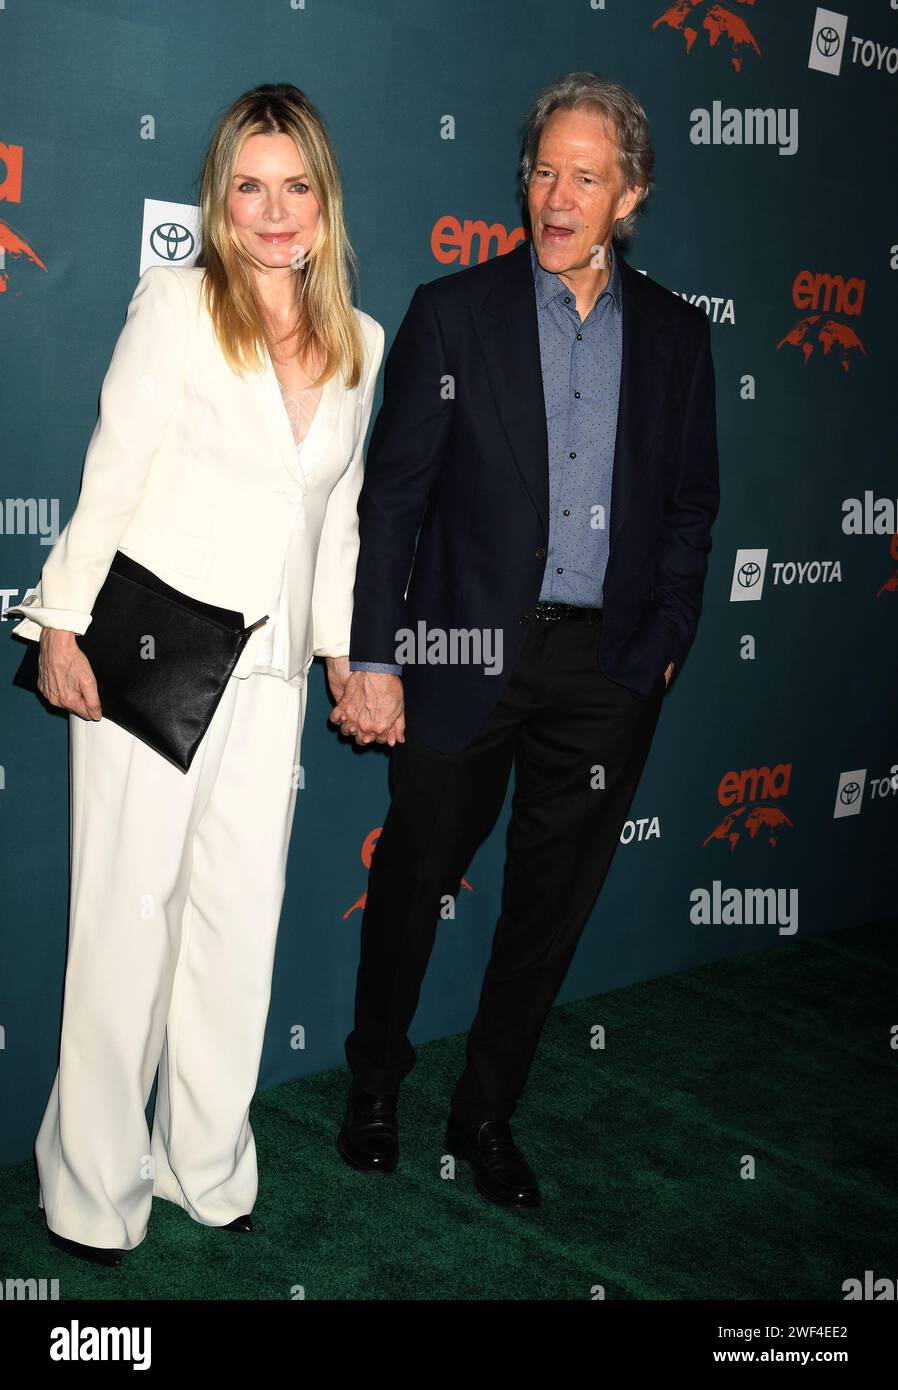 LOS ANGELES, KALIFORNIEN - 27. JANUAR: Michelle Pfeiffer und David E. Kelley nehmen an der 33. Jährlichen EMA Awards Gala zu Ehren von Laura Dern, Sponsore, Teil Stockfoto